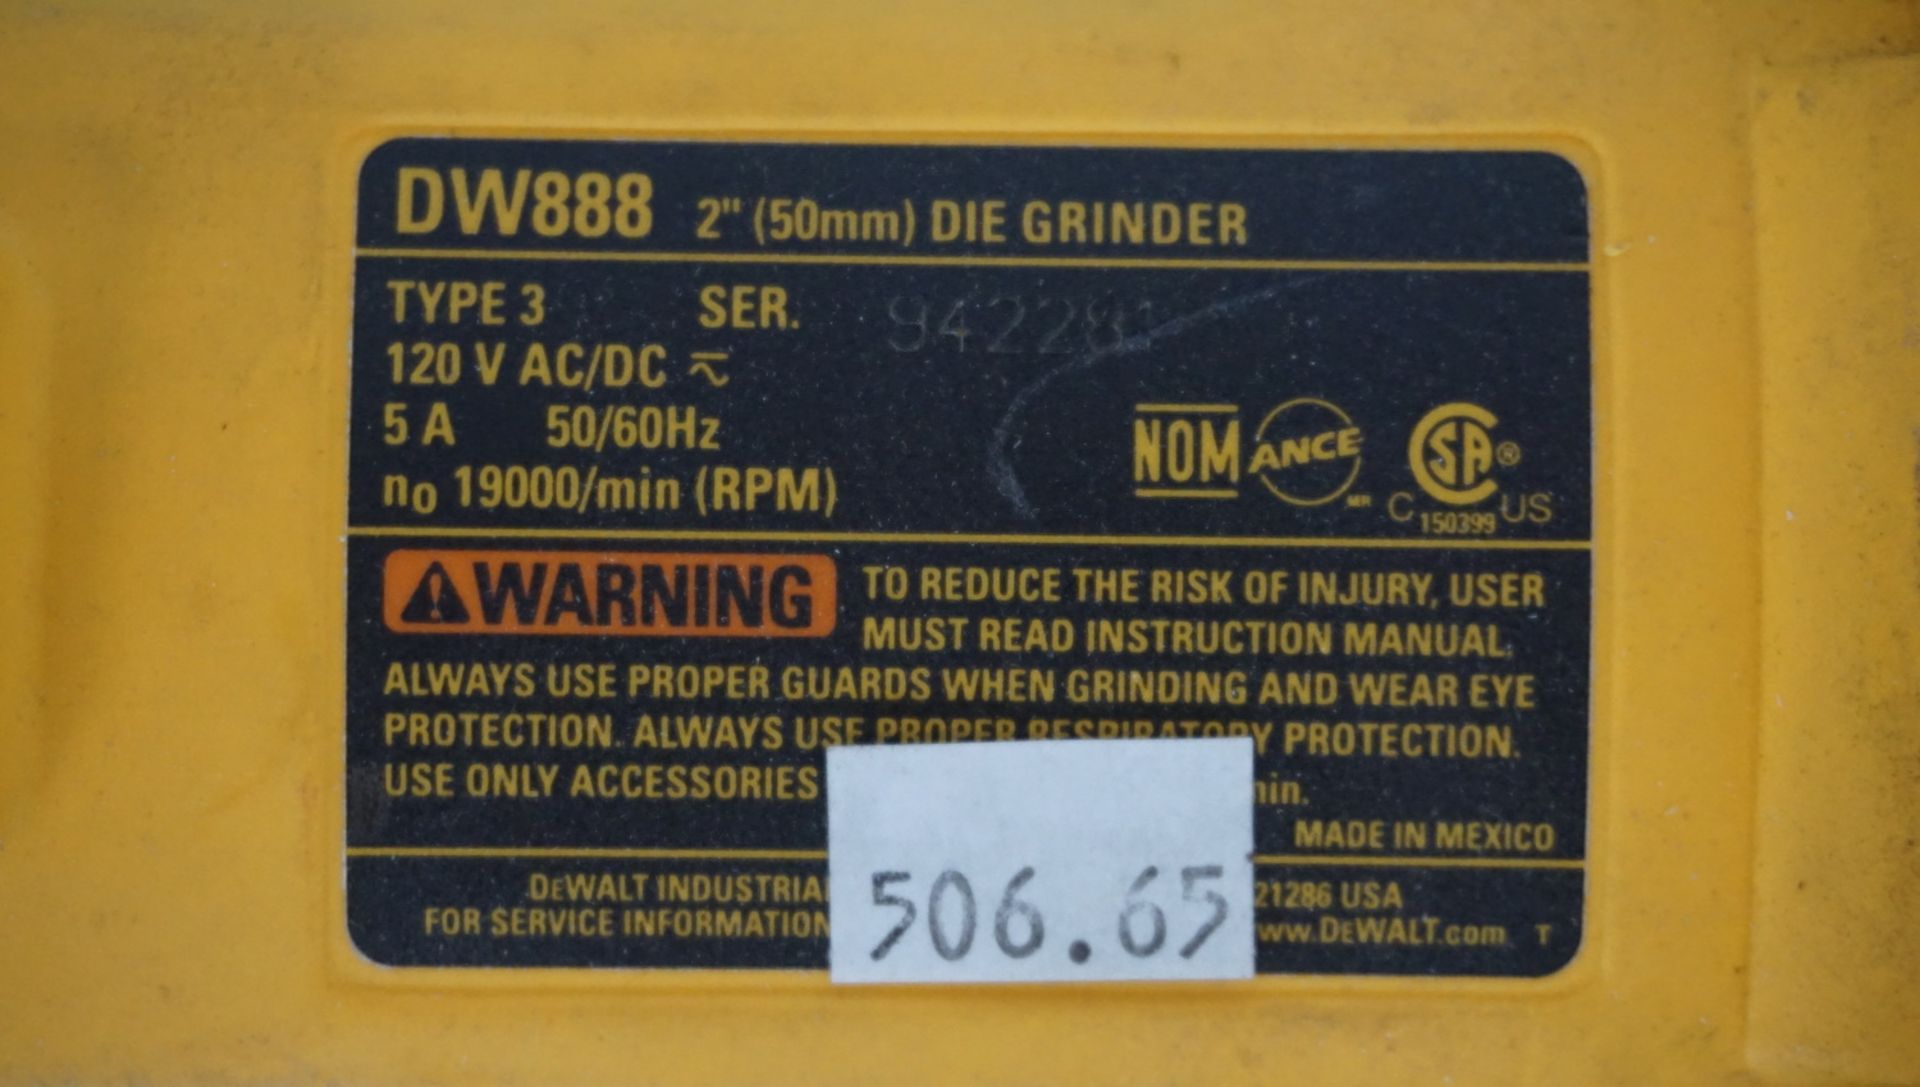 DEWALT DW888 2" ELECTRIC DIE GRINDER - Image 2 of 2